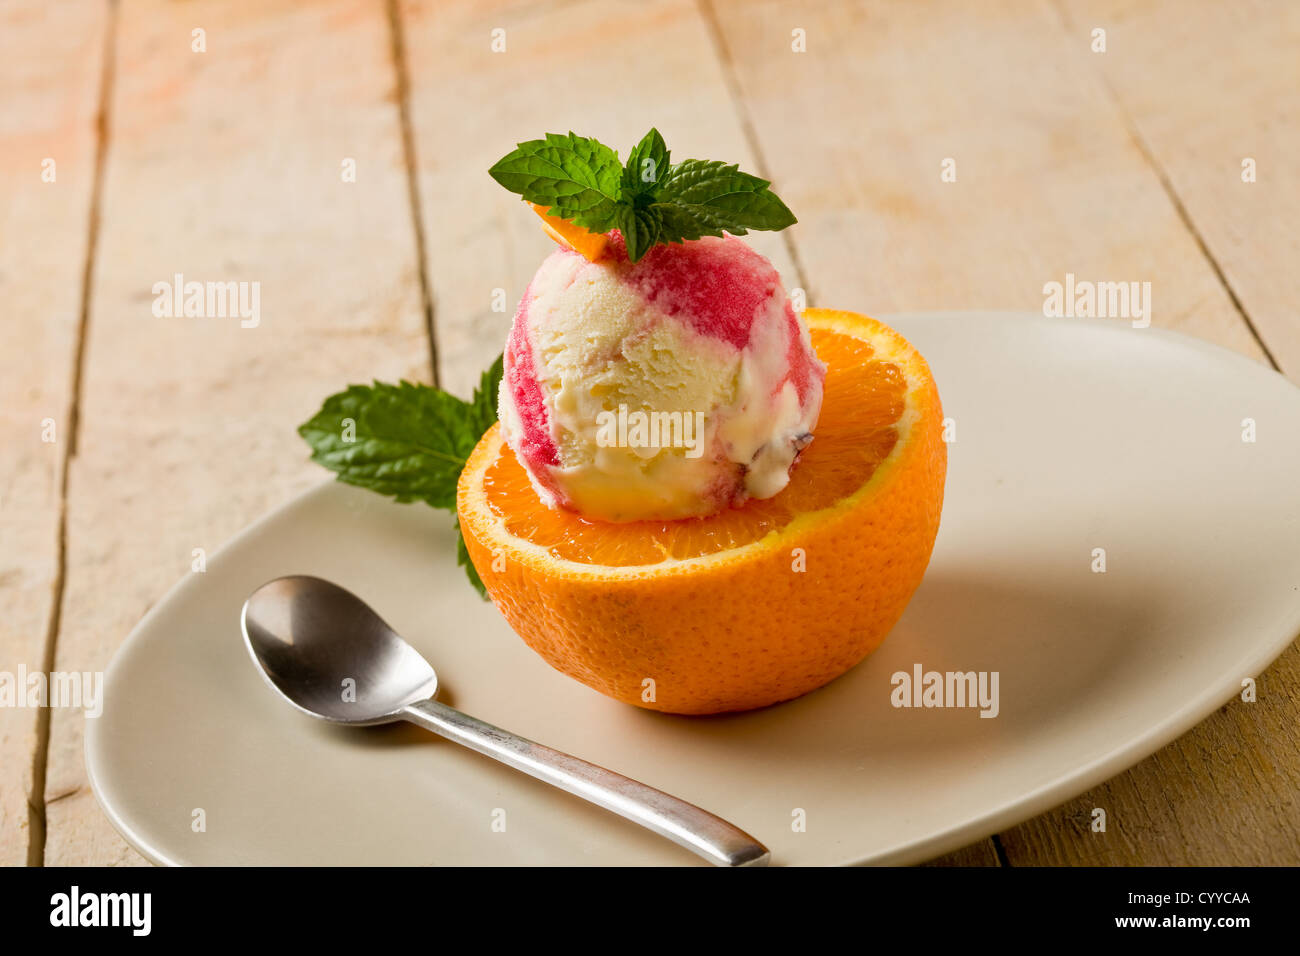 Foto von leckeren fruchtigen Eis am geschnittenen Orang mit frischer Minze Blätter Stockfoto